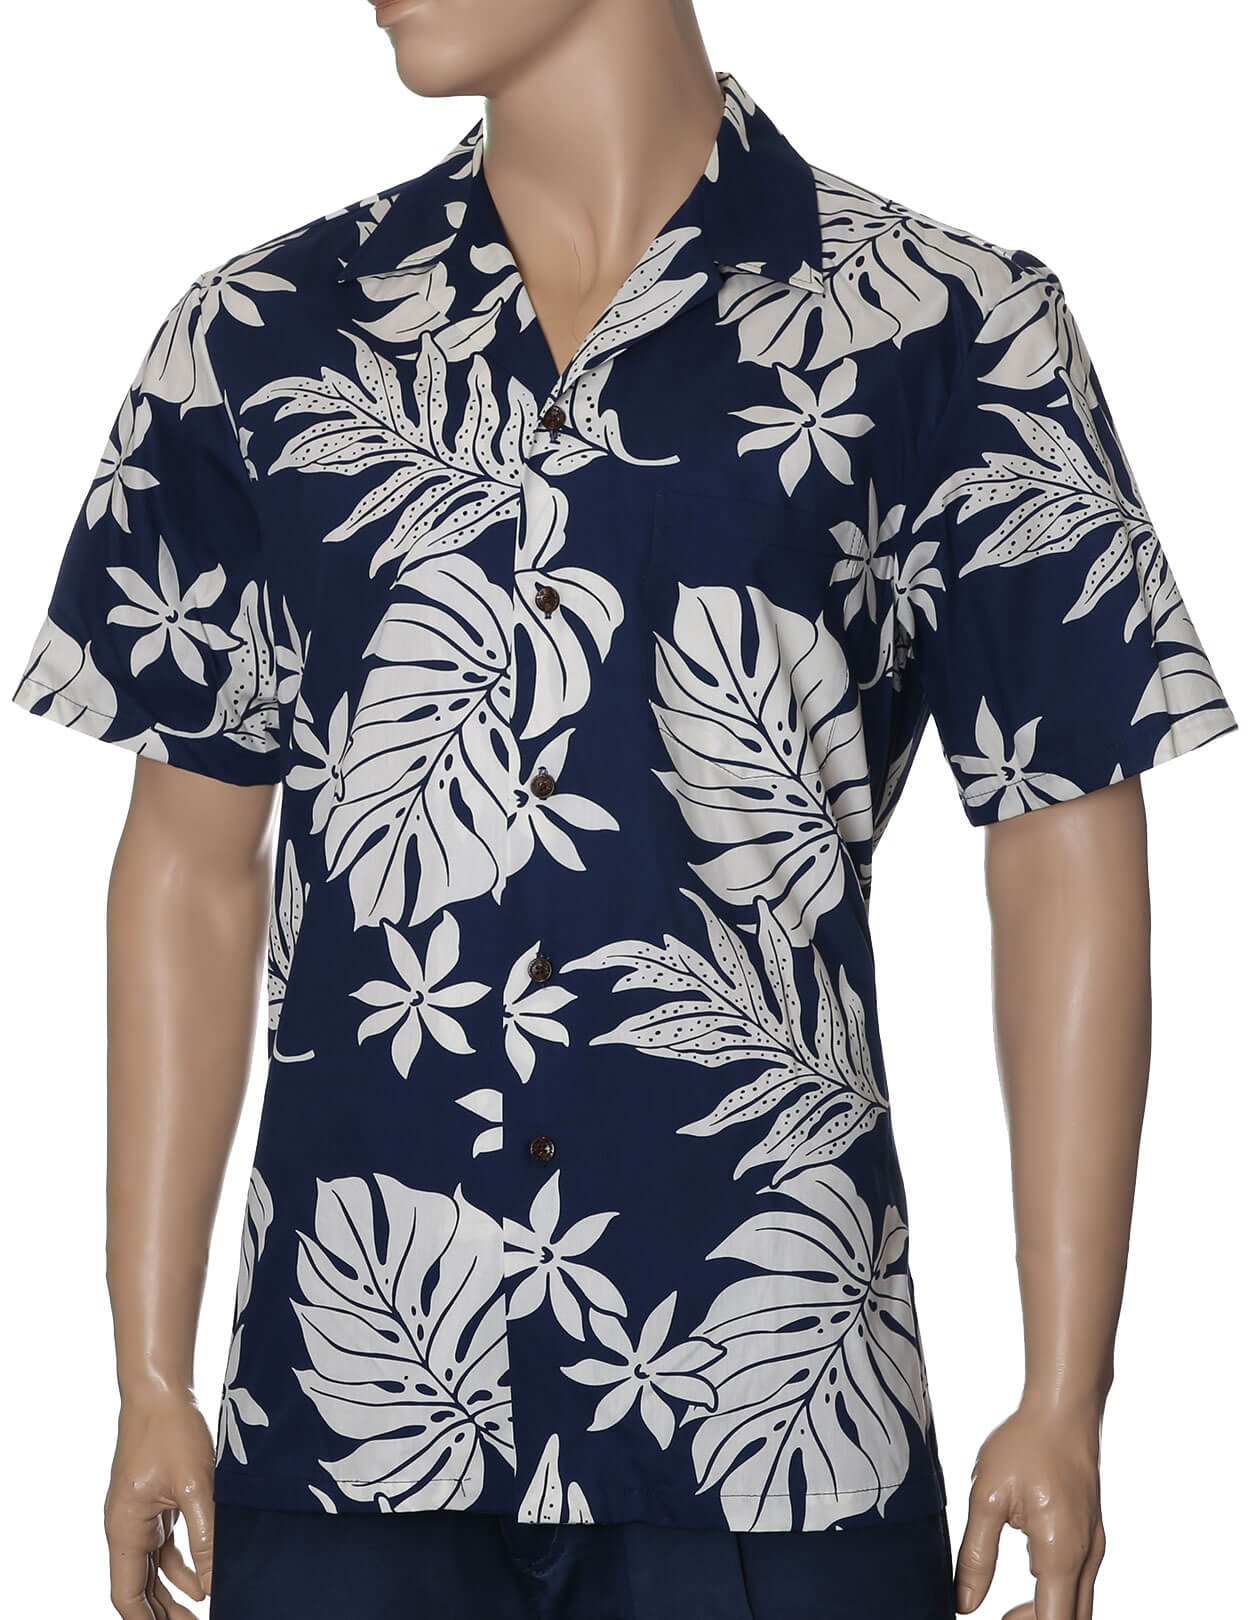 100% Cotton Relax Fit Hawaiian Aloha Shirt Navy